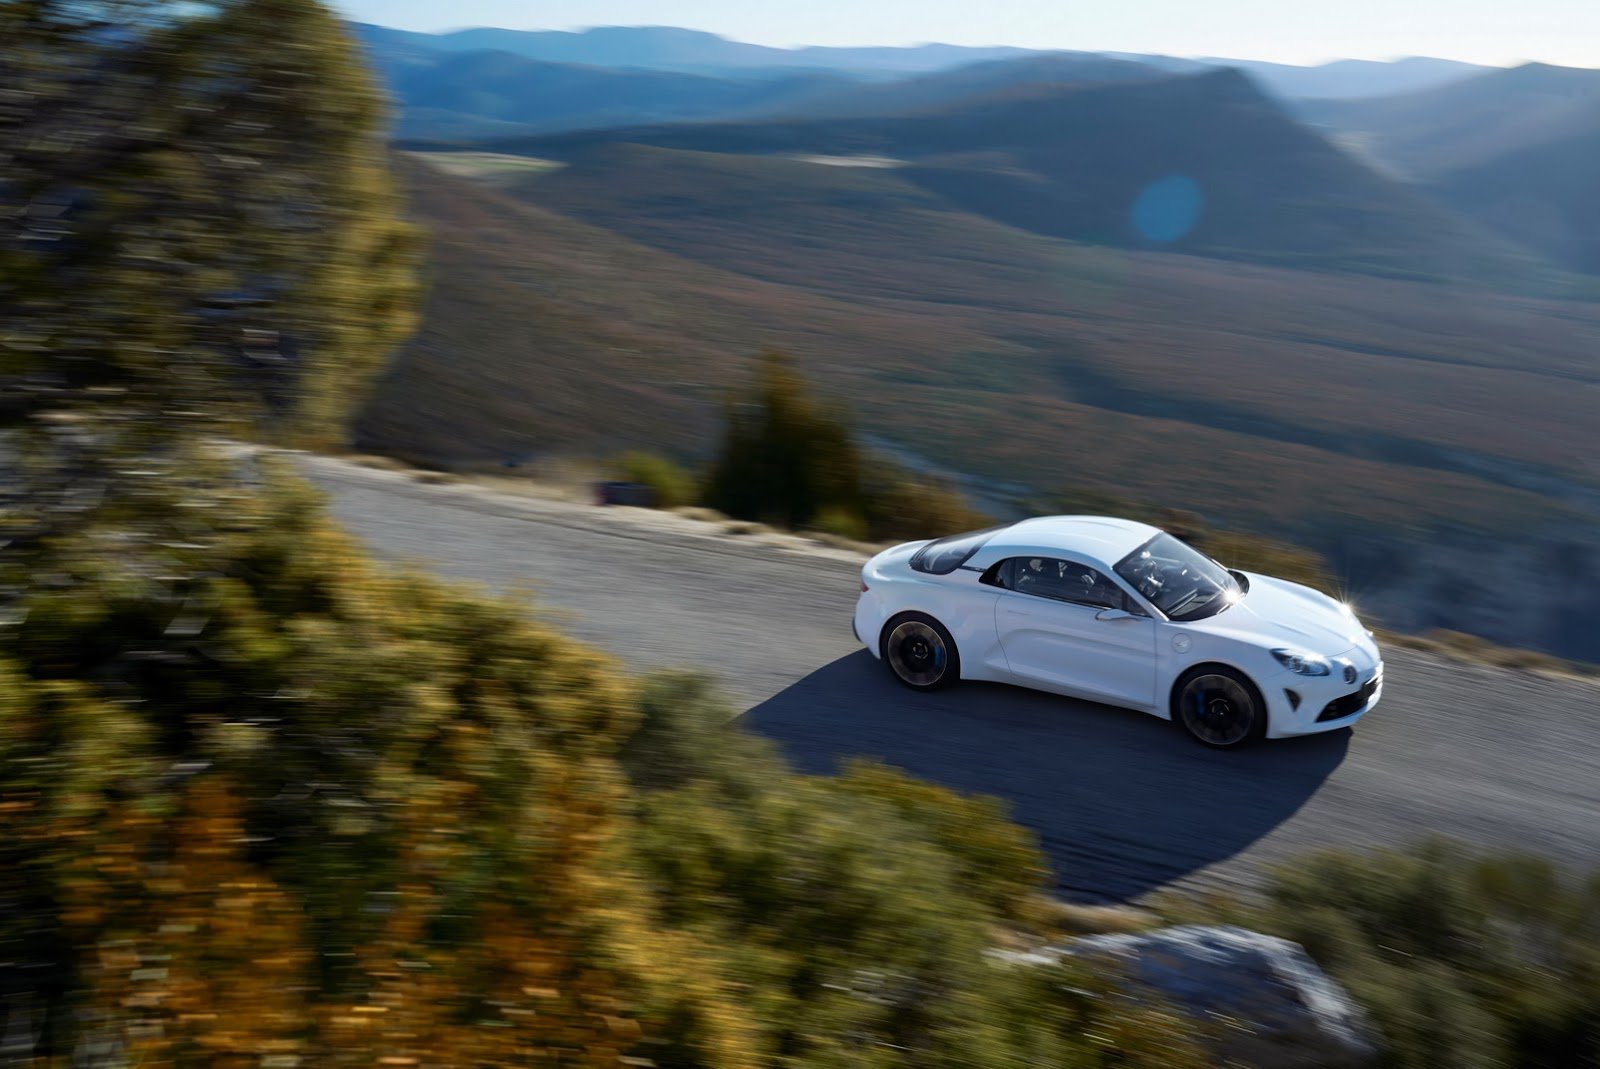 Alpine Vision je moderní reinkarnací kupé A110, v prodeji se objeví příští rok.